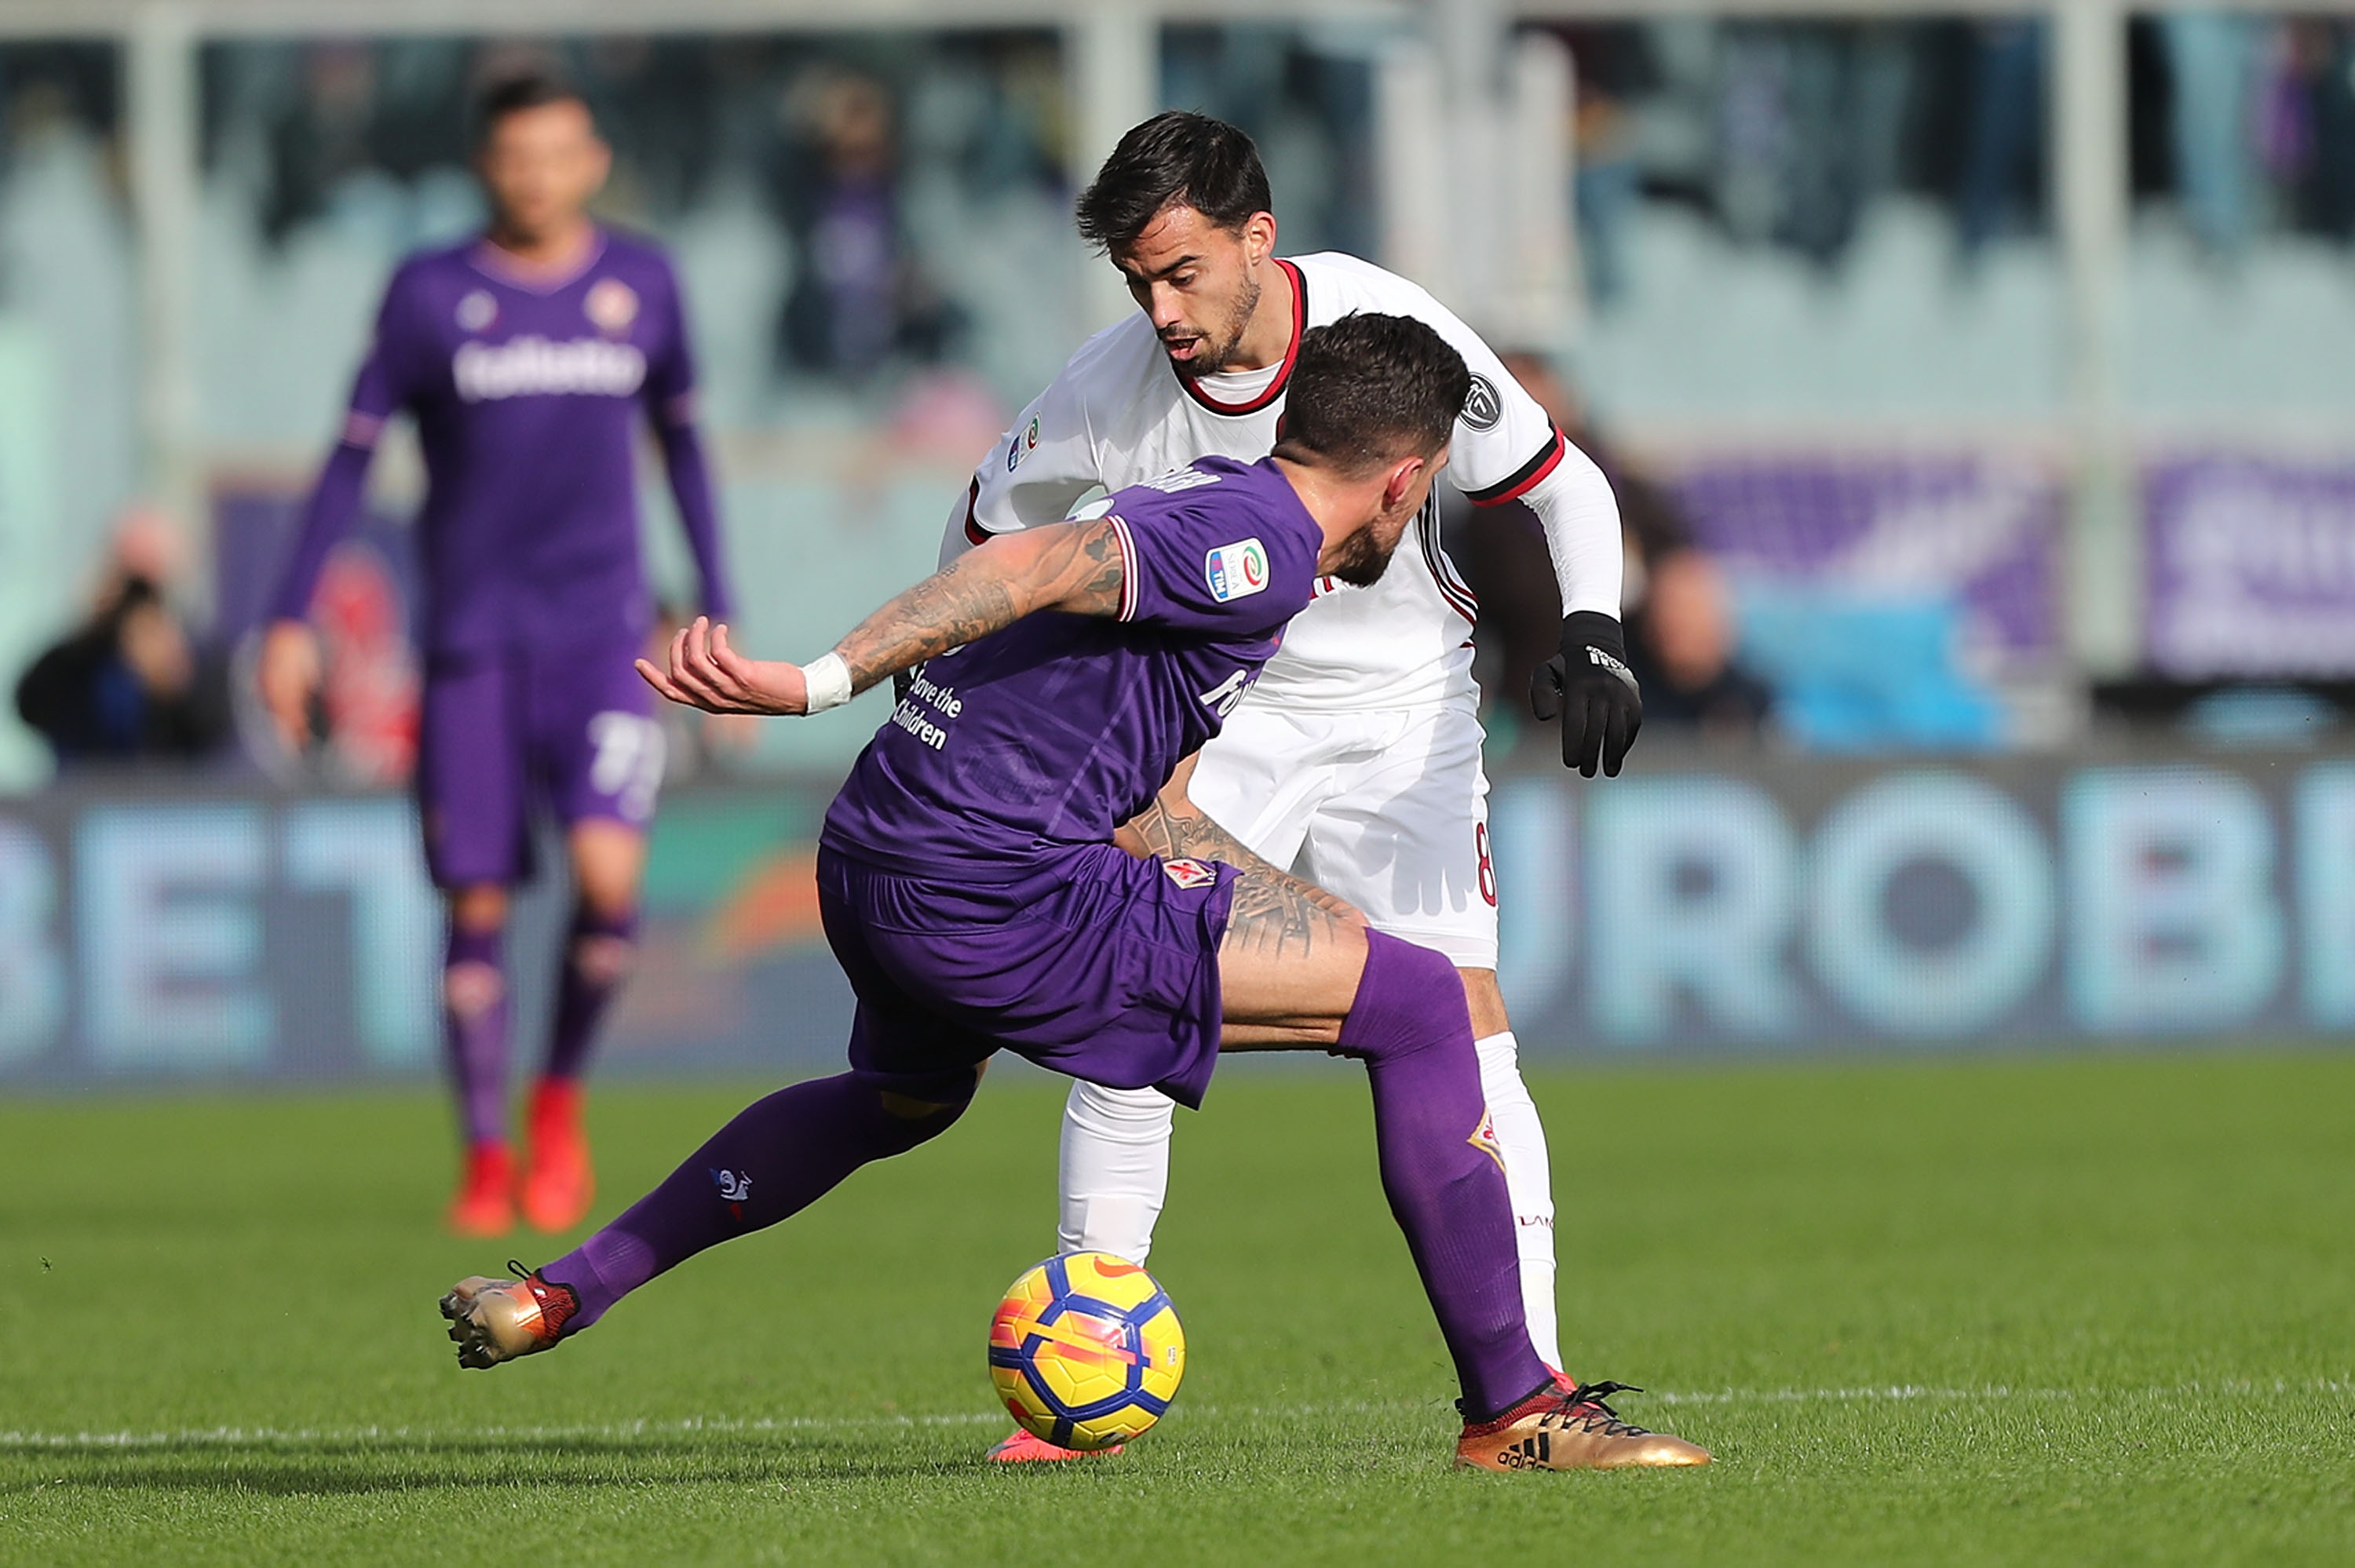 Soi kèo, nhận định Fiorentina vs AC Milan 01h30 ngày 12/05/2019